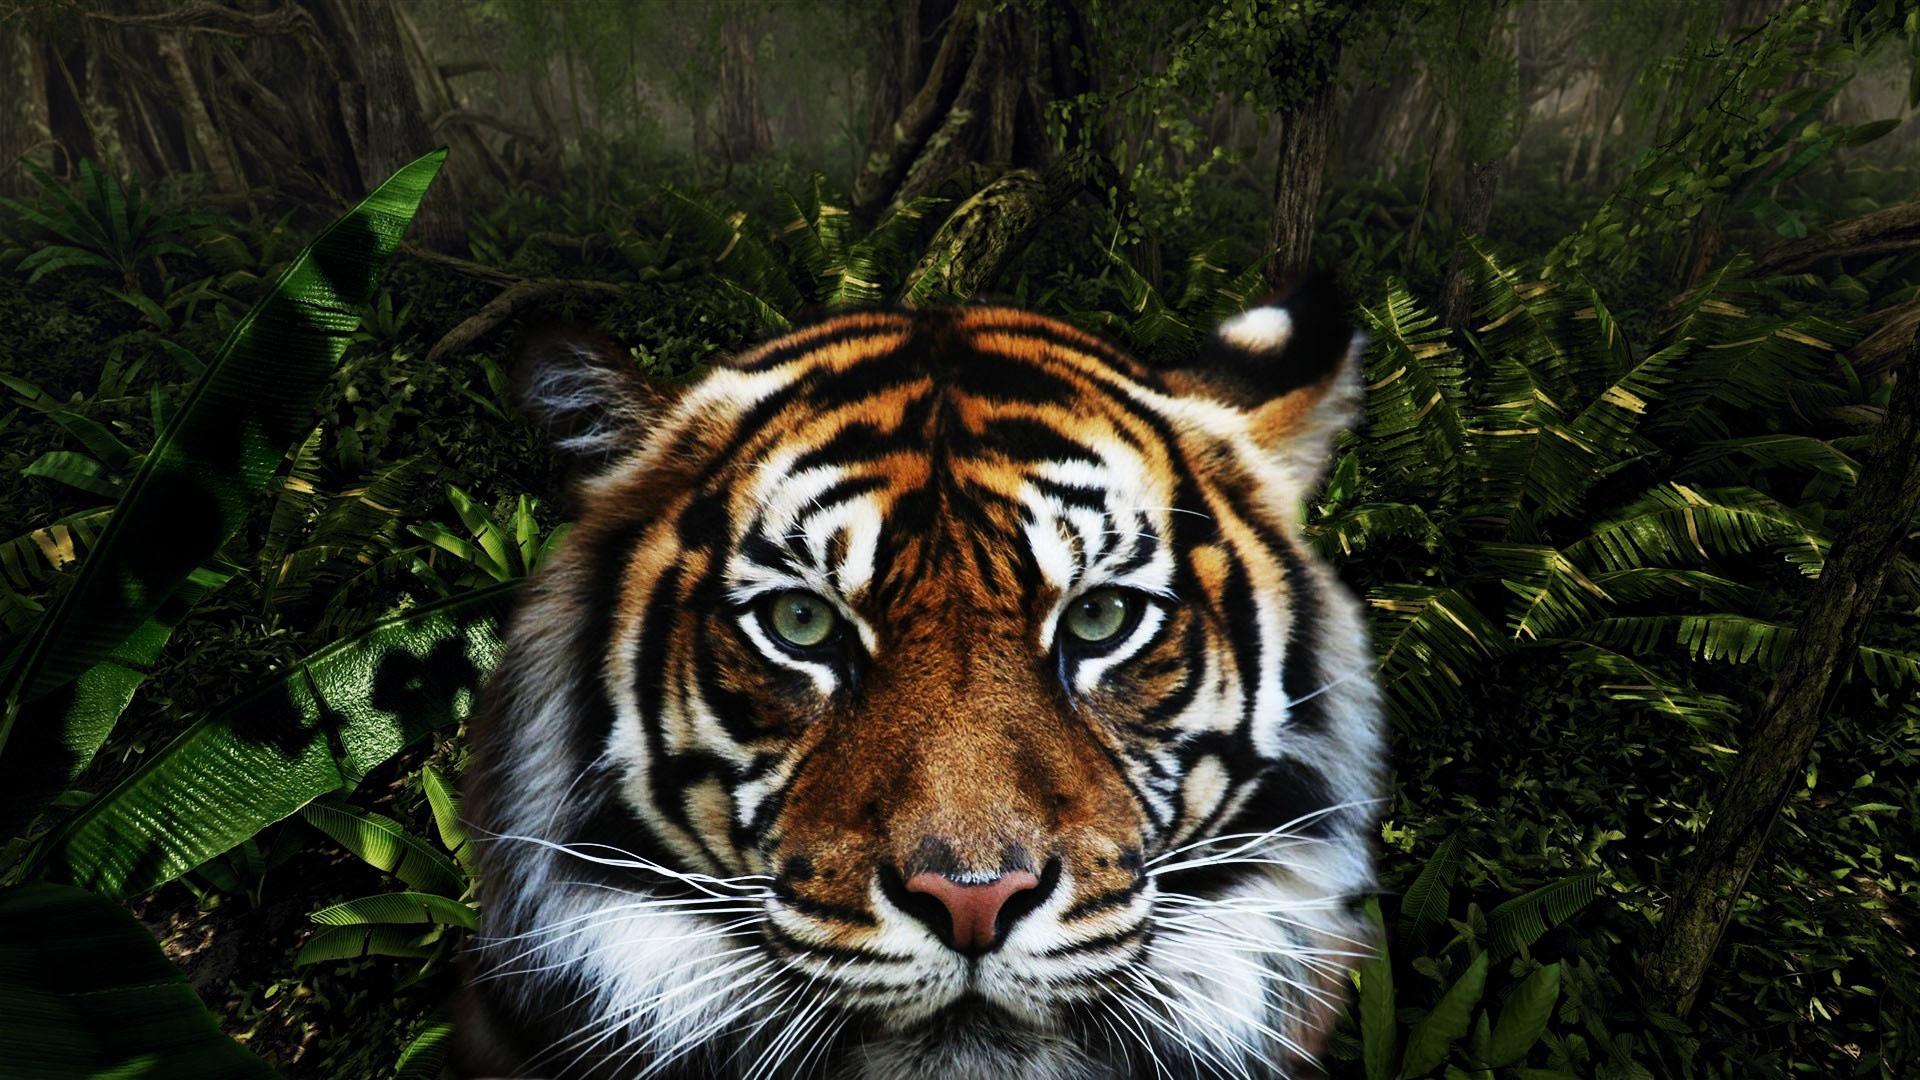 Descarga gratuita de fondo de pantalla para móvil de Animales, Gatos, Tigre, Cara, Selva, Mirar Fijamente.